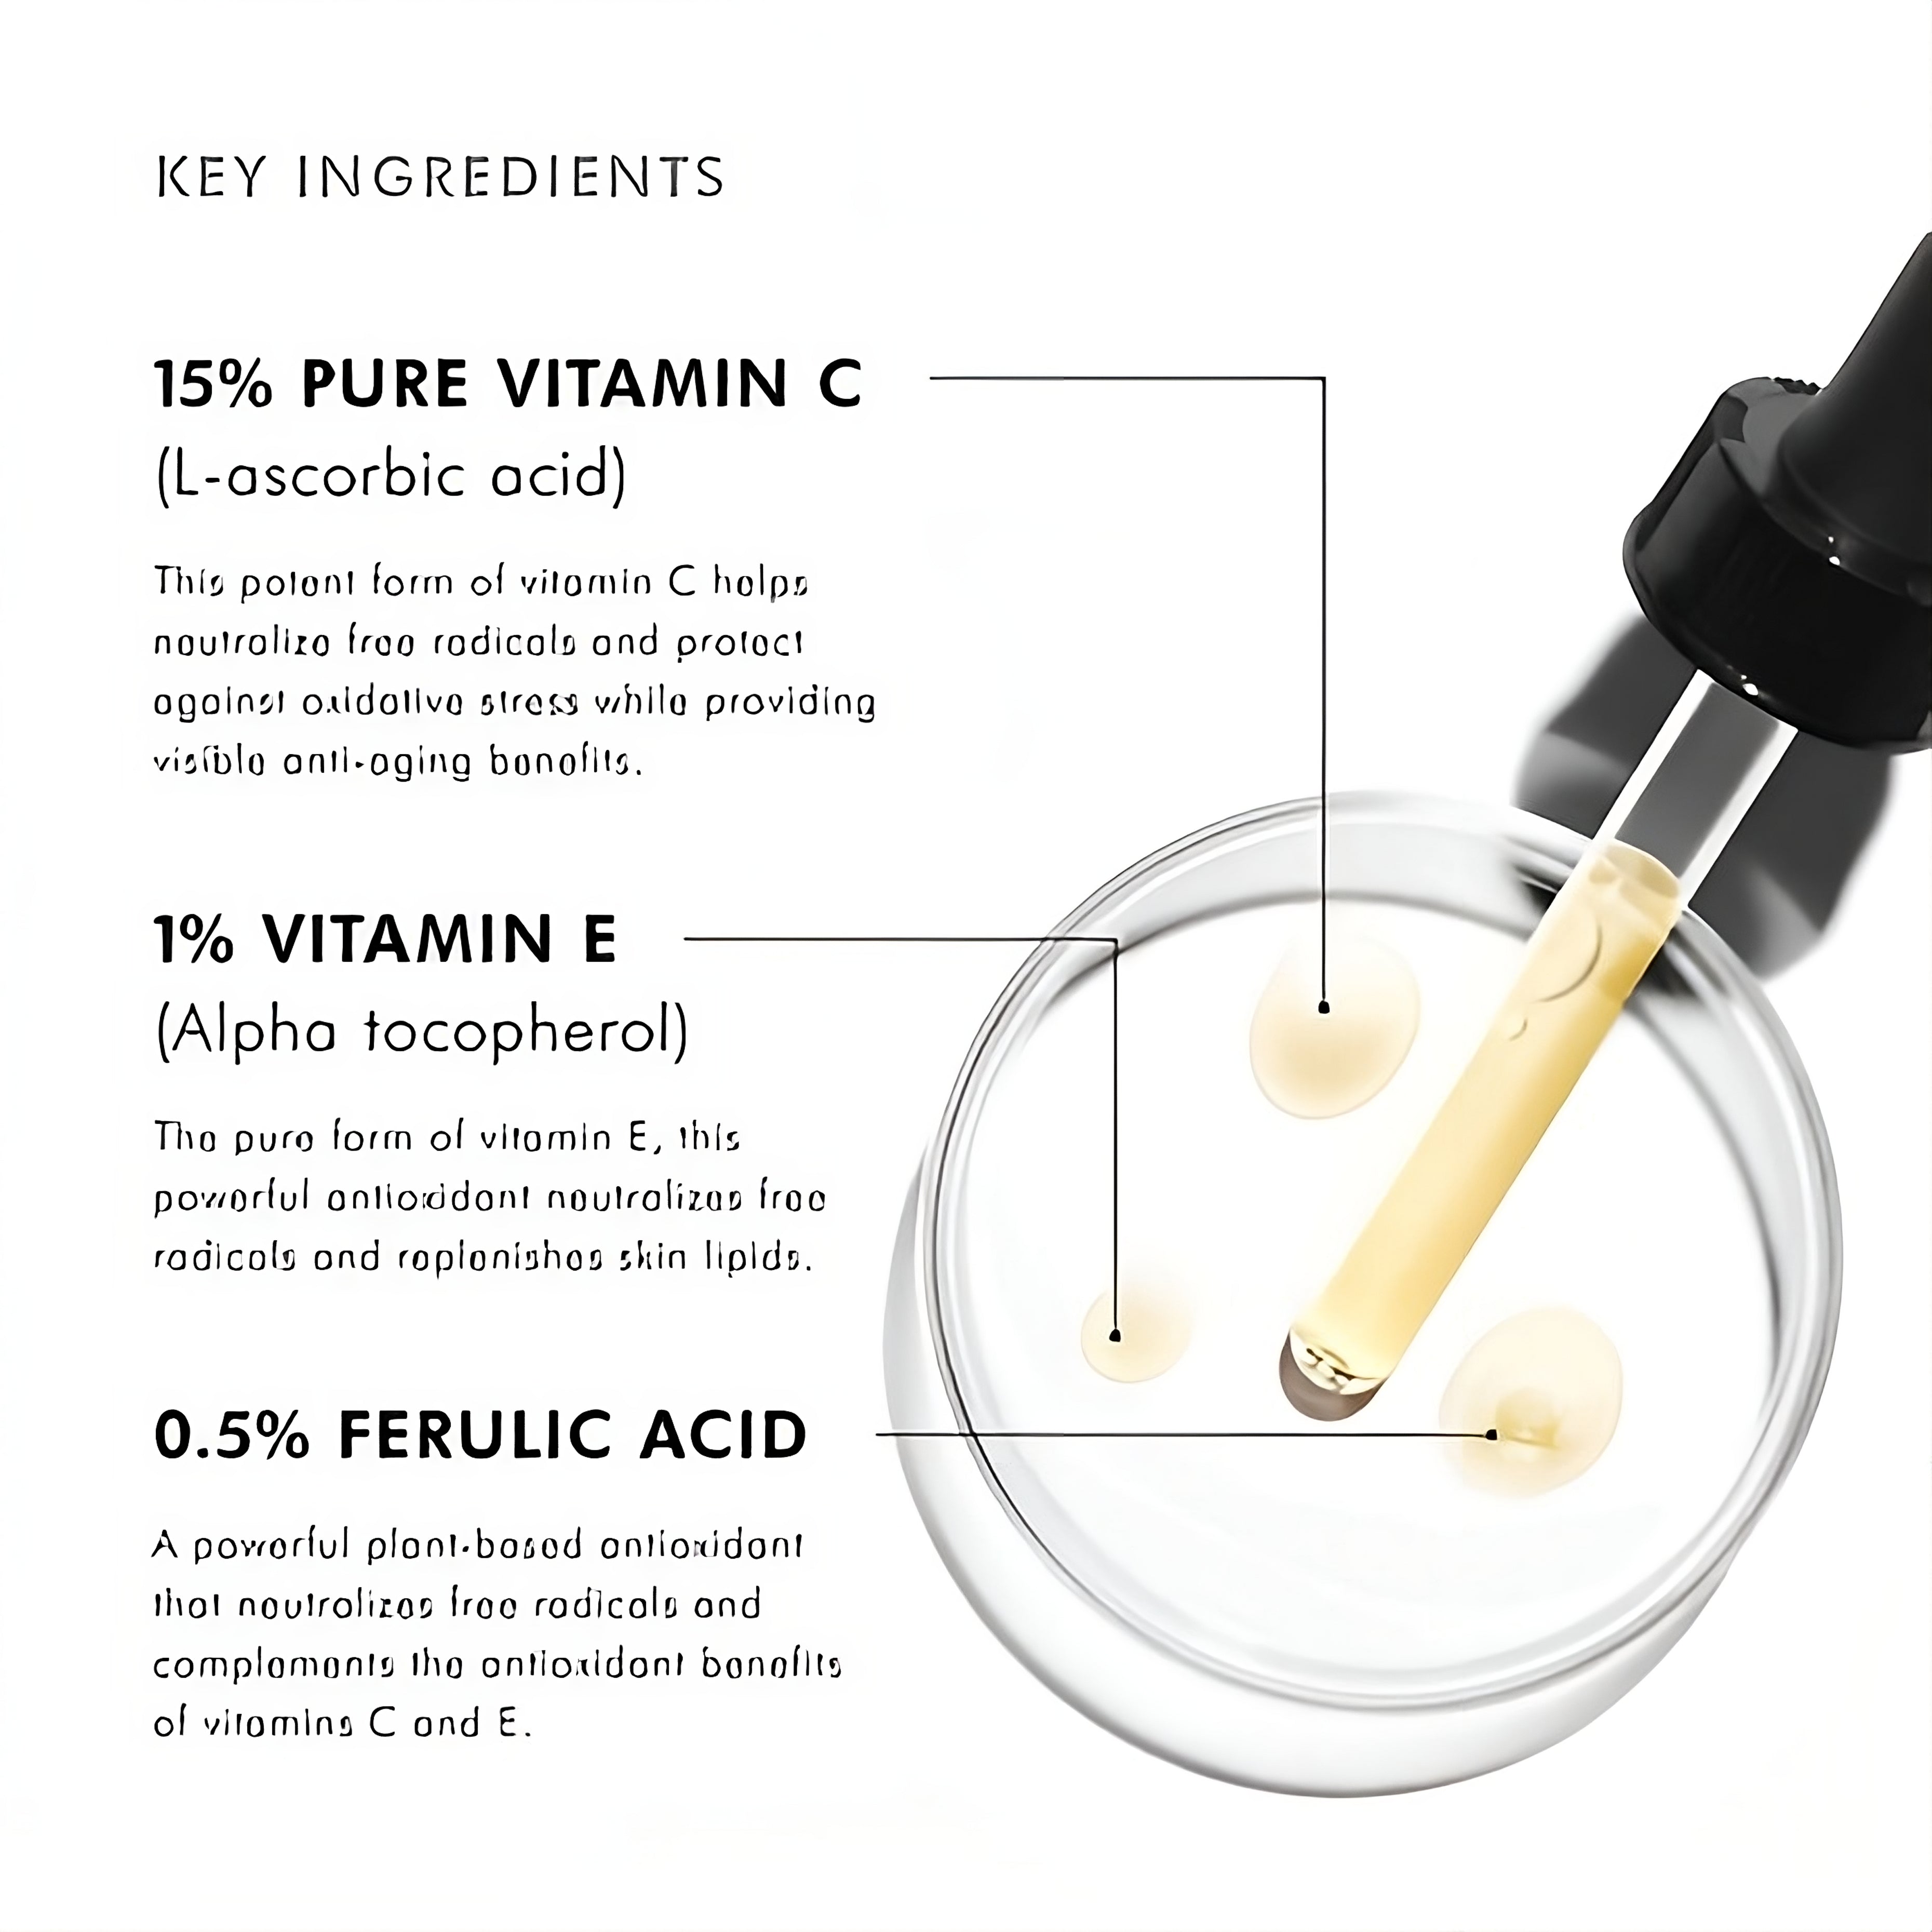 "Unlock Radiance with C E Ferulic® - 15% L-ascorbic Acid | SkinCeuticals Skincare"